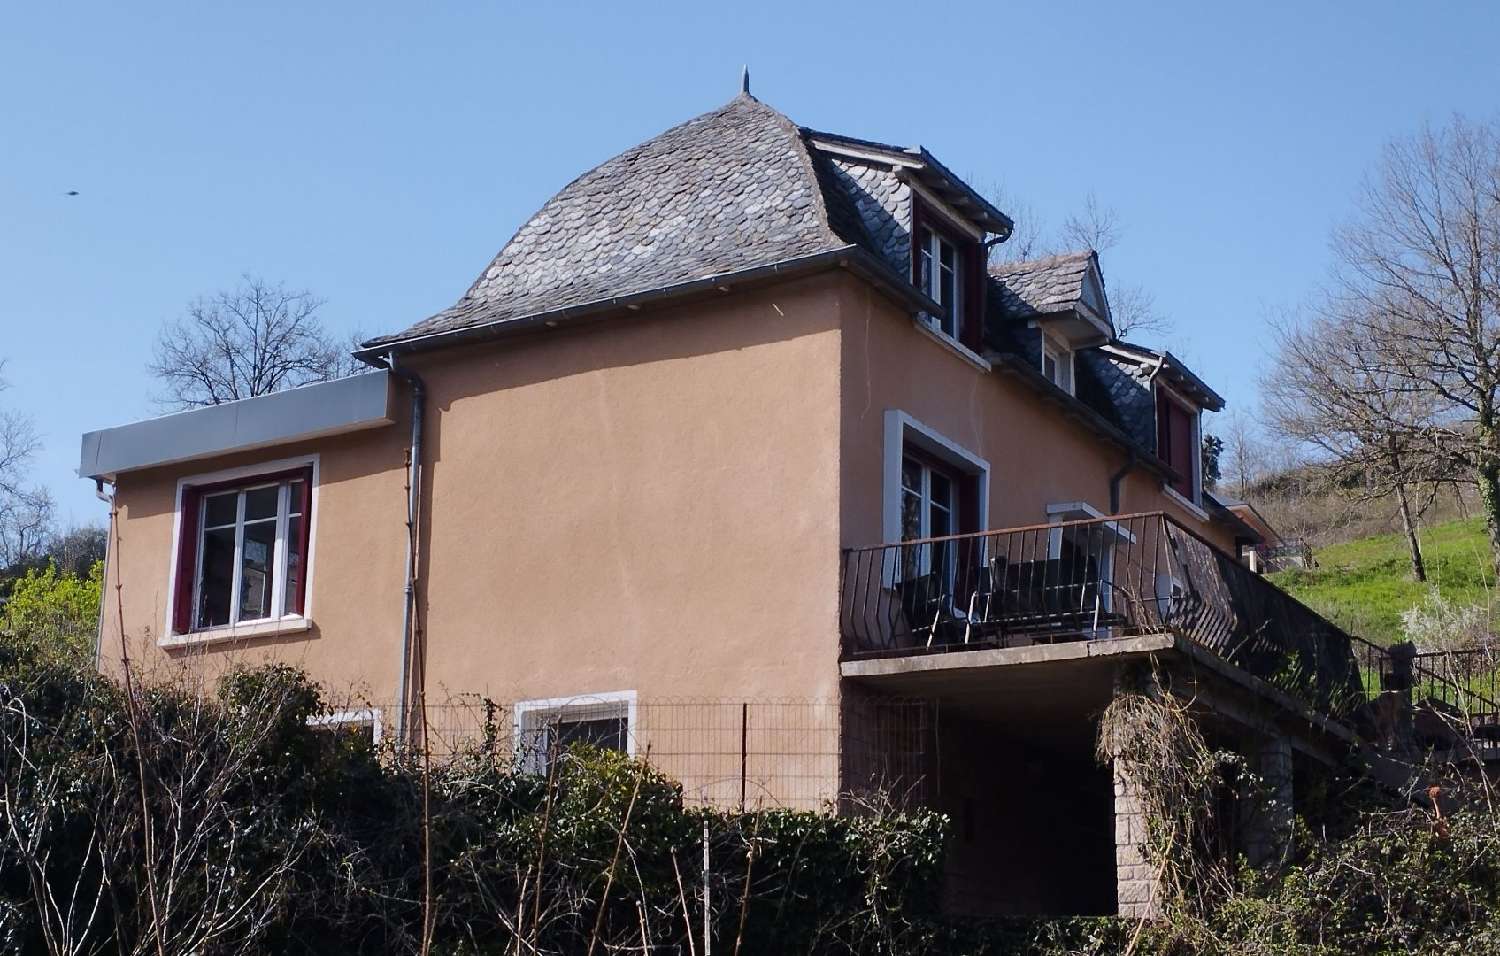  à vendre maison Villecomtal Aveyron 2